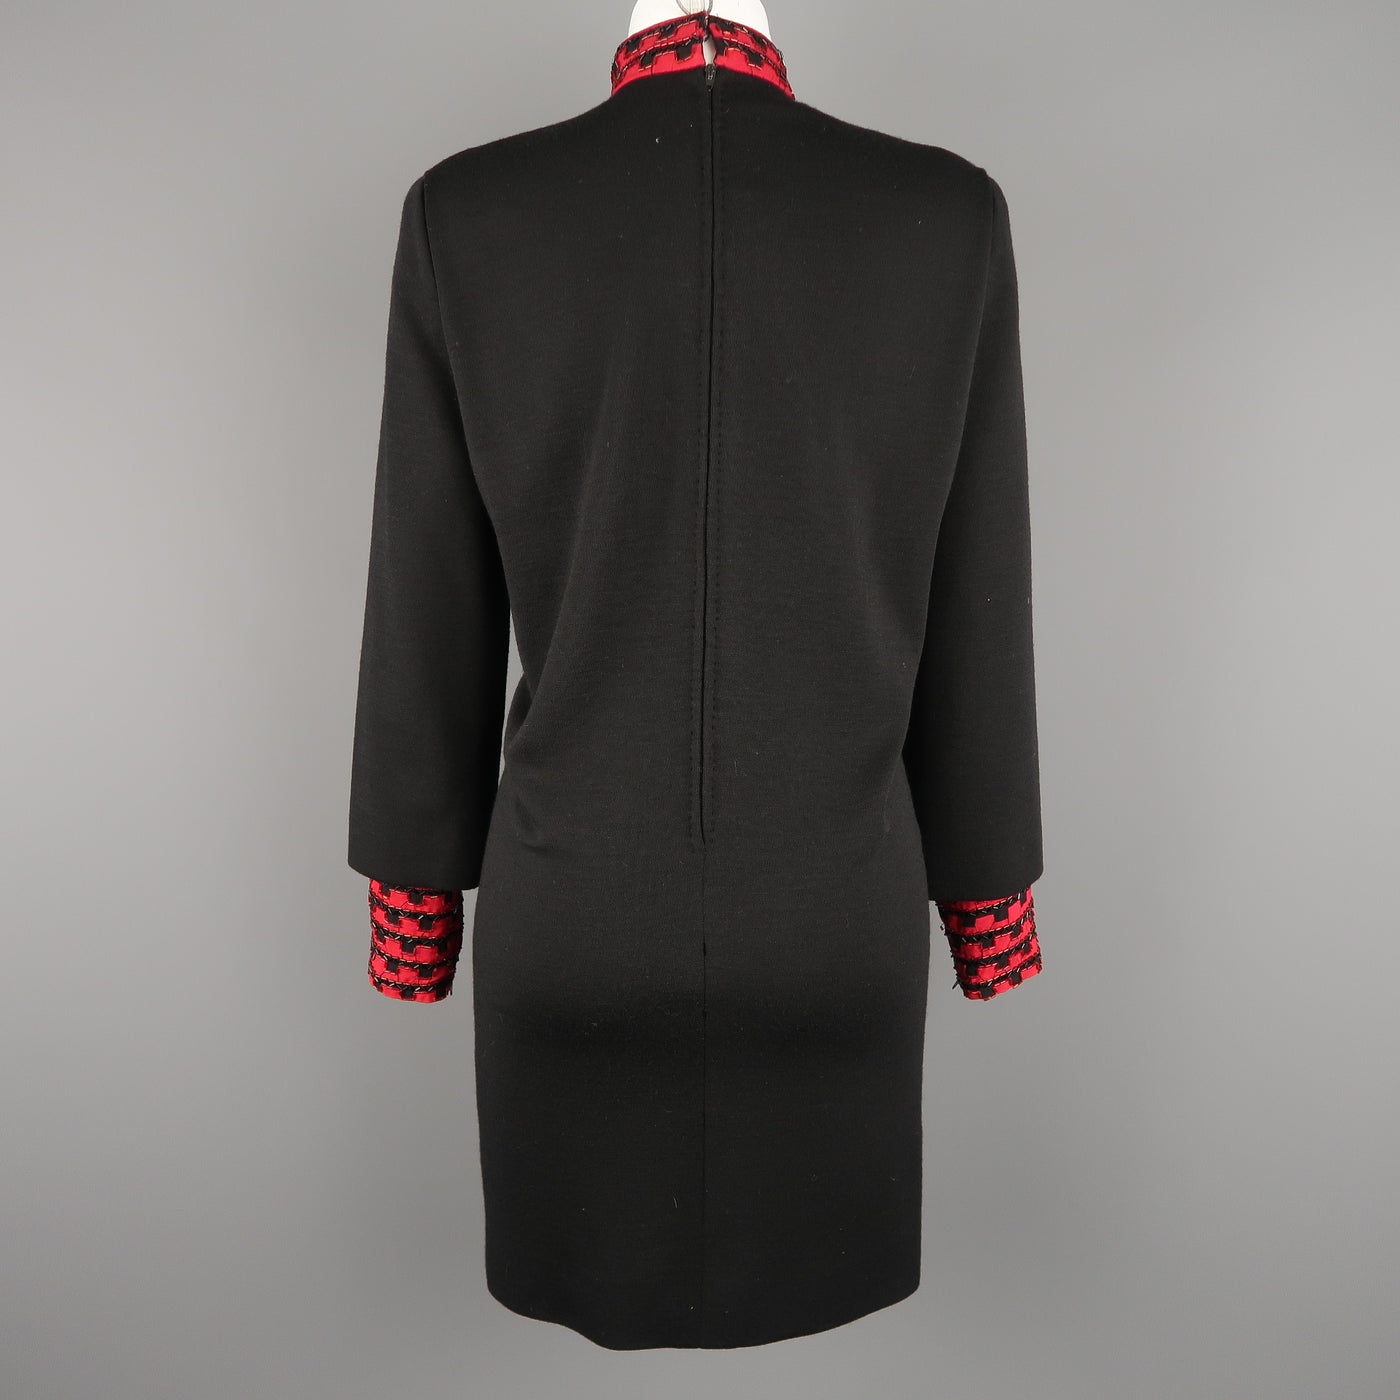 Vintage 1980's BOB MACKIE Size L Black Jersey Red Beaded Neck Dress